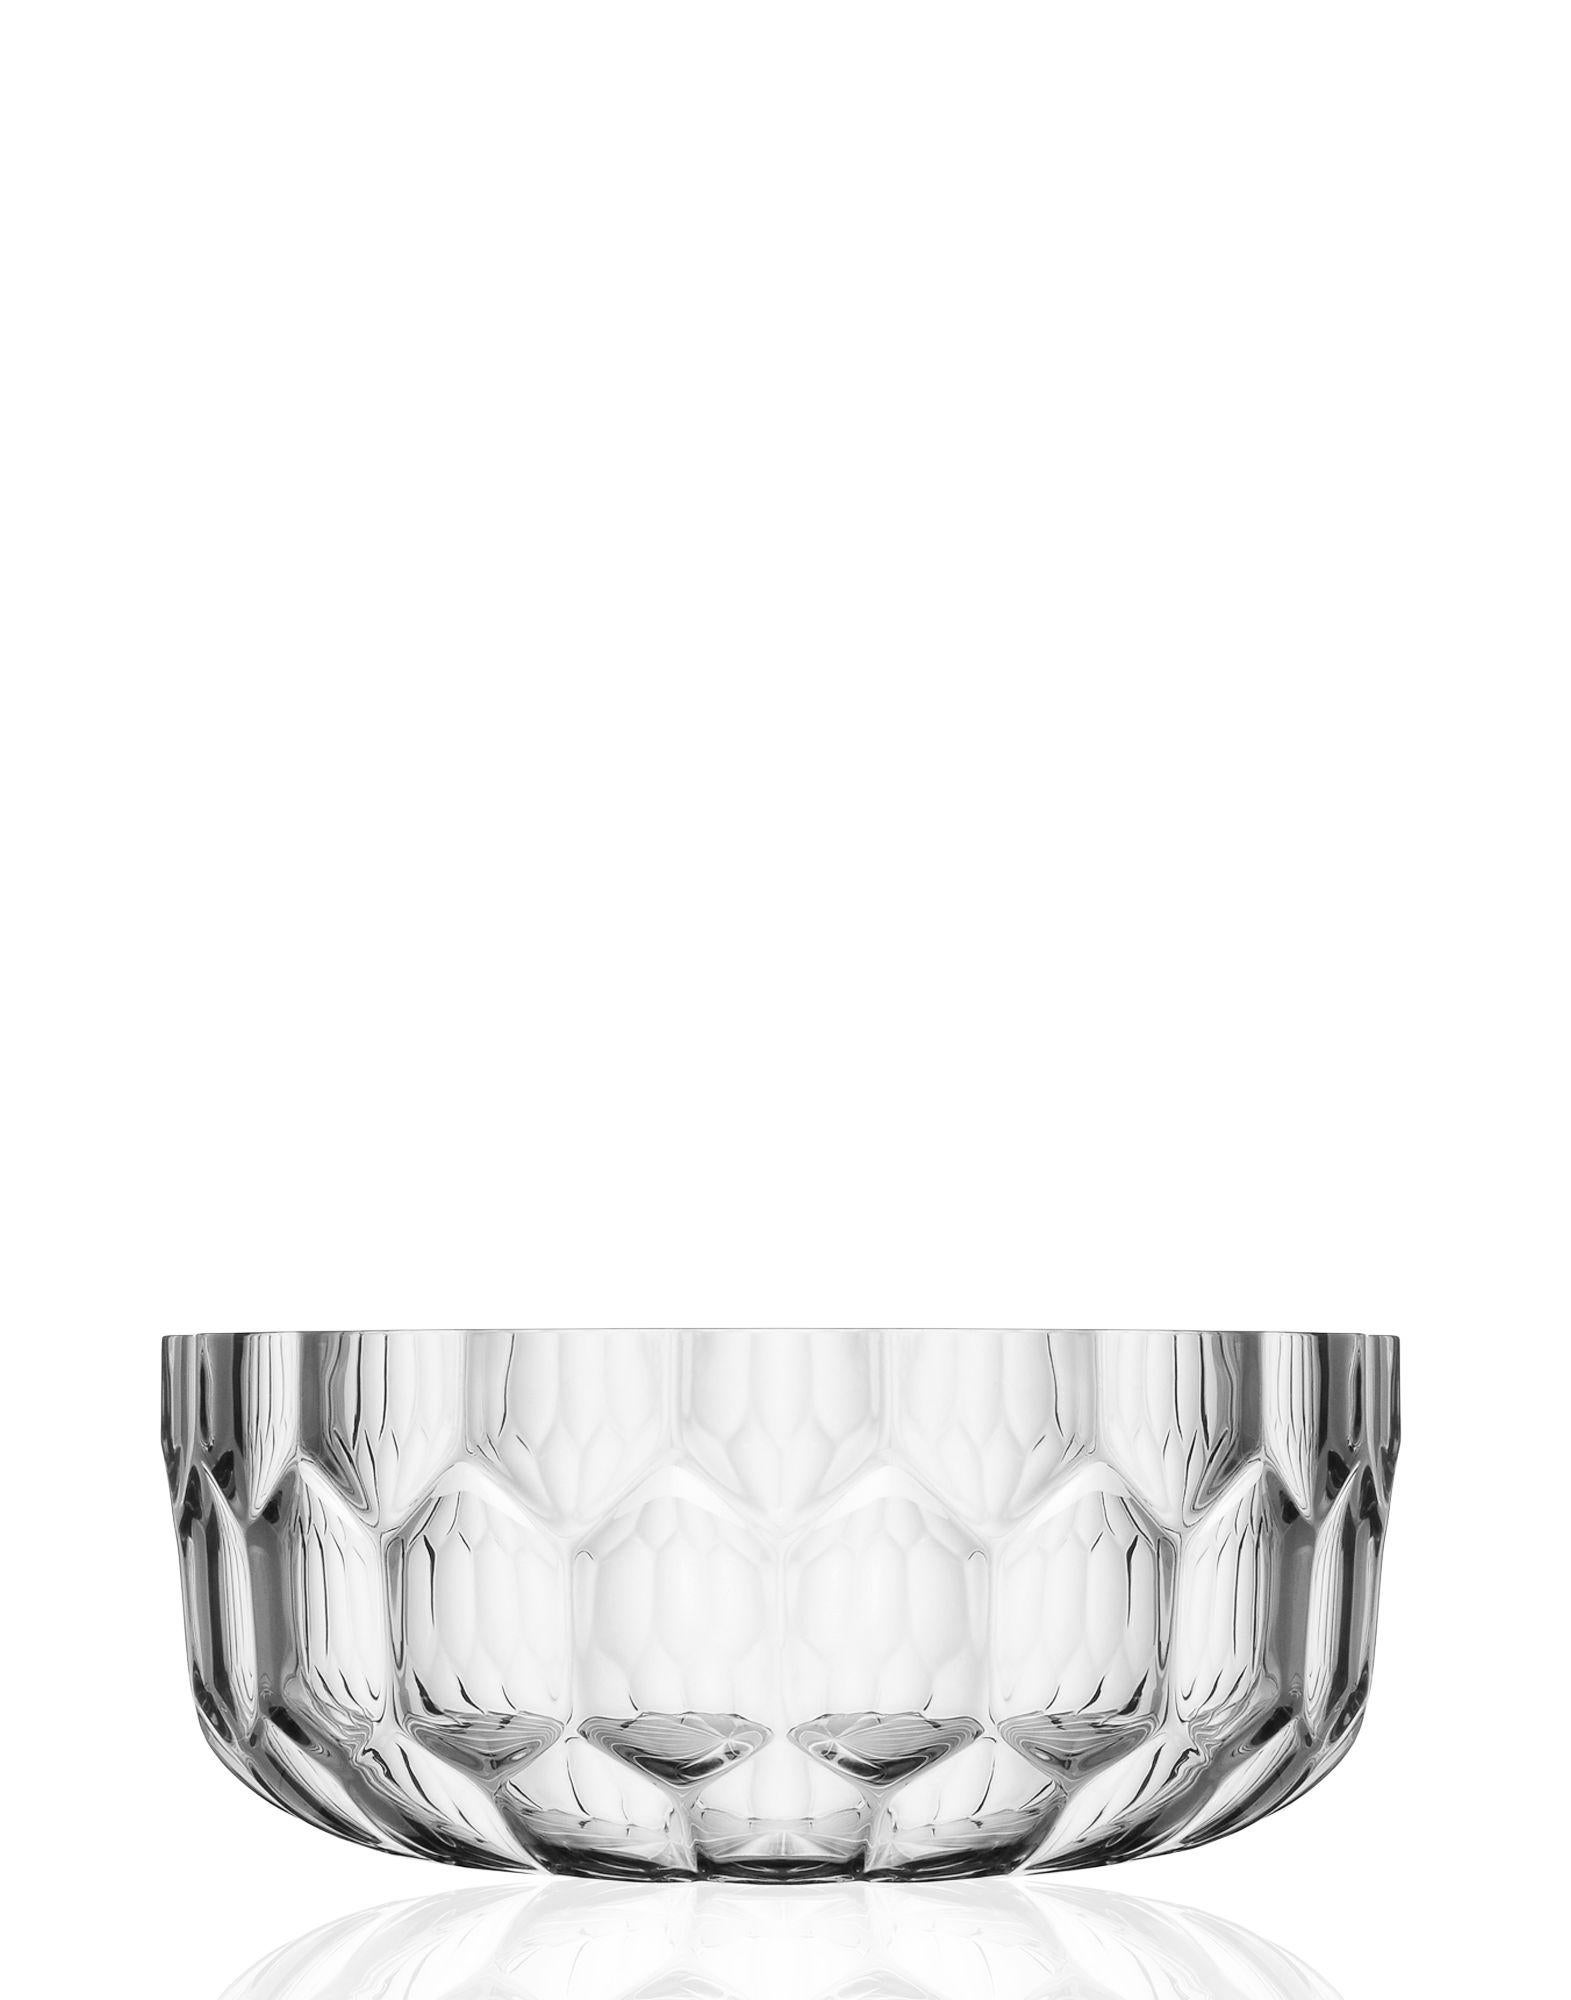 Die Vasen und Tischplatten Jelly sind Teil einer neuen Serie von Designobjekten, mit denen Kartell auf der ständigen Suche nach neuen taktilen und ästhetischen Effekten einmal mehr sein technologisches Know-how beim Experimentieren mit